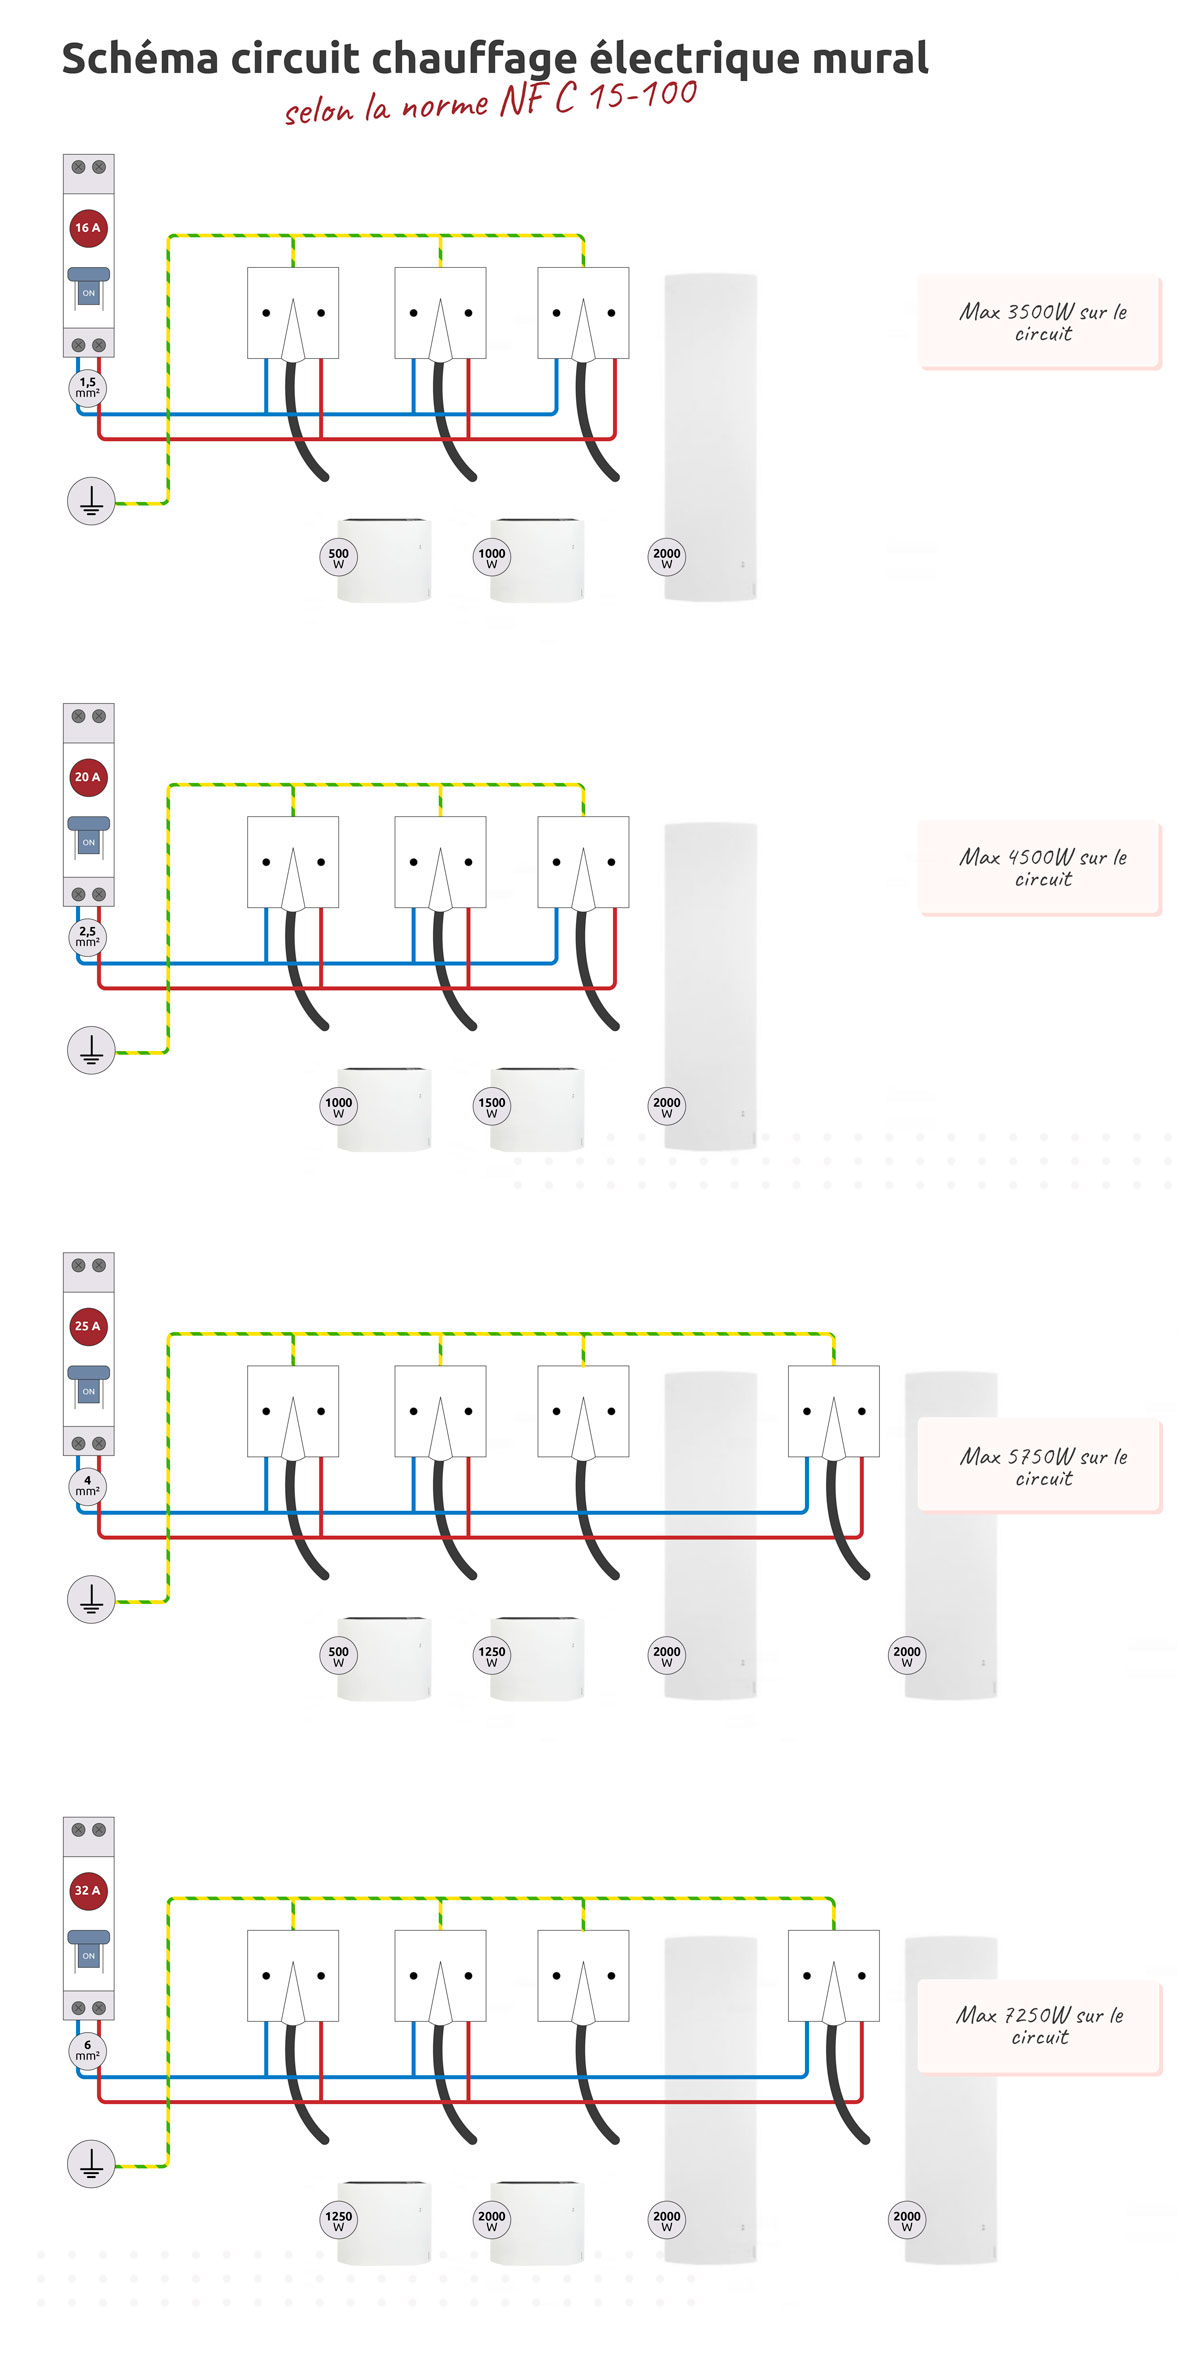 schema circuit électrique pour le chauffage électrique mural selon norme NF C 15-100